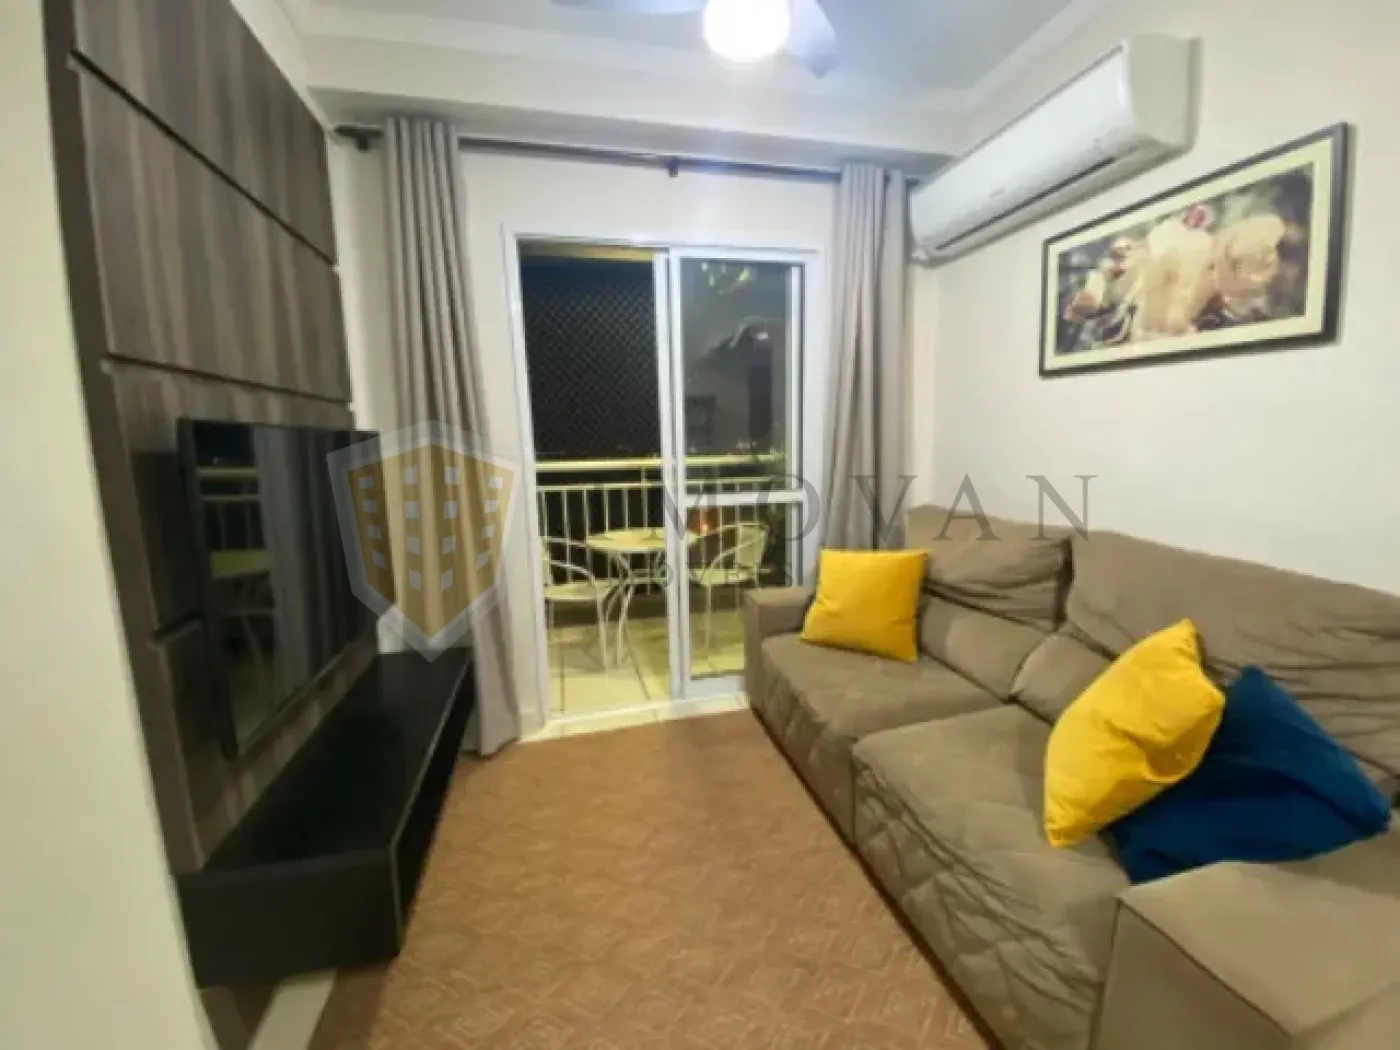 Comprar Apartamento / Padrão em Ribeirão Preto R$ 298.000,00 - Foto 4